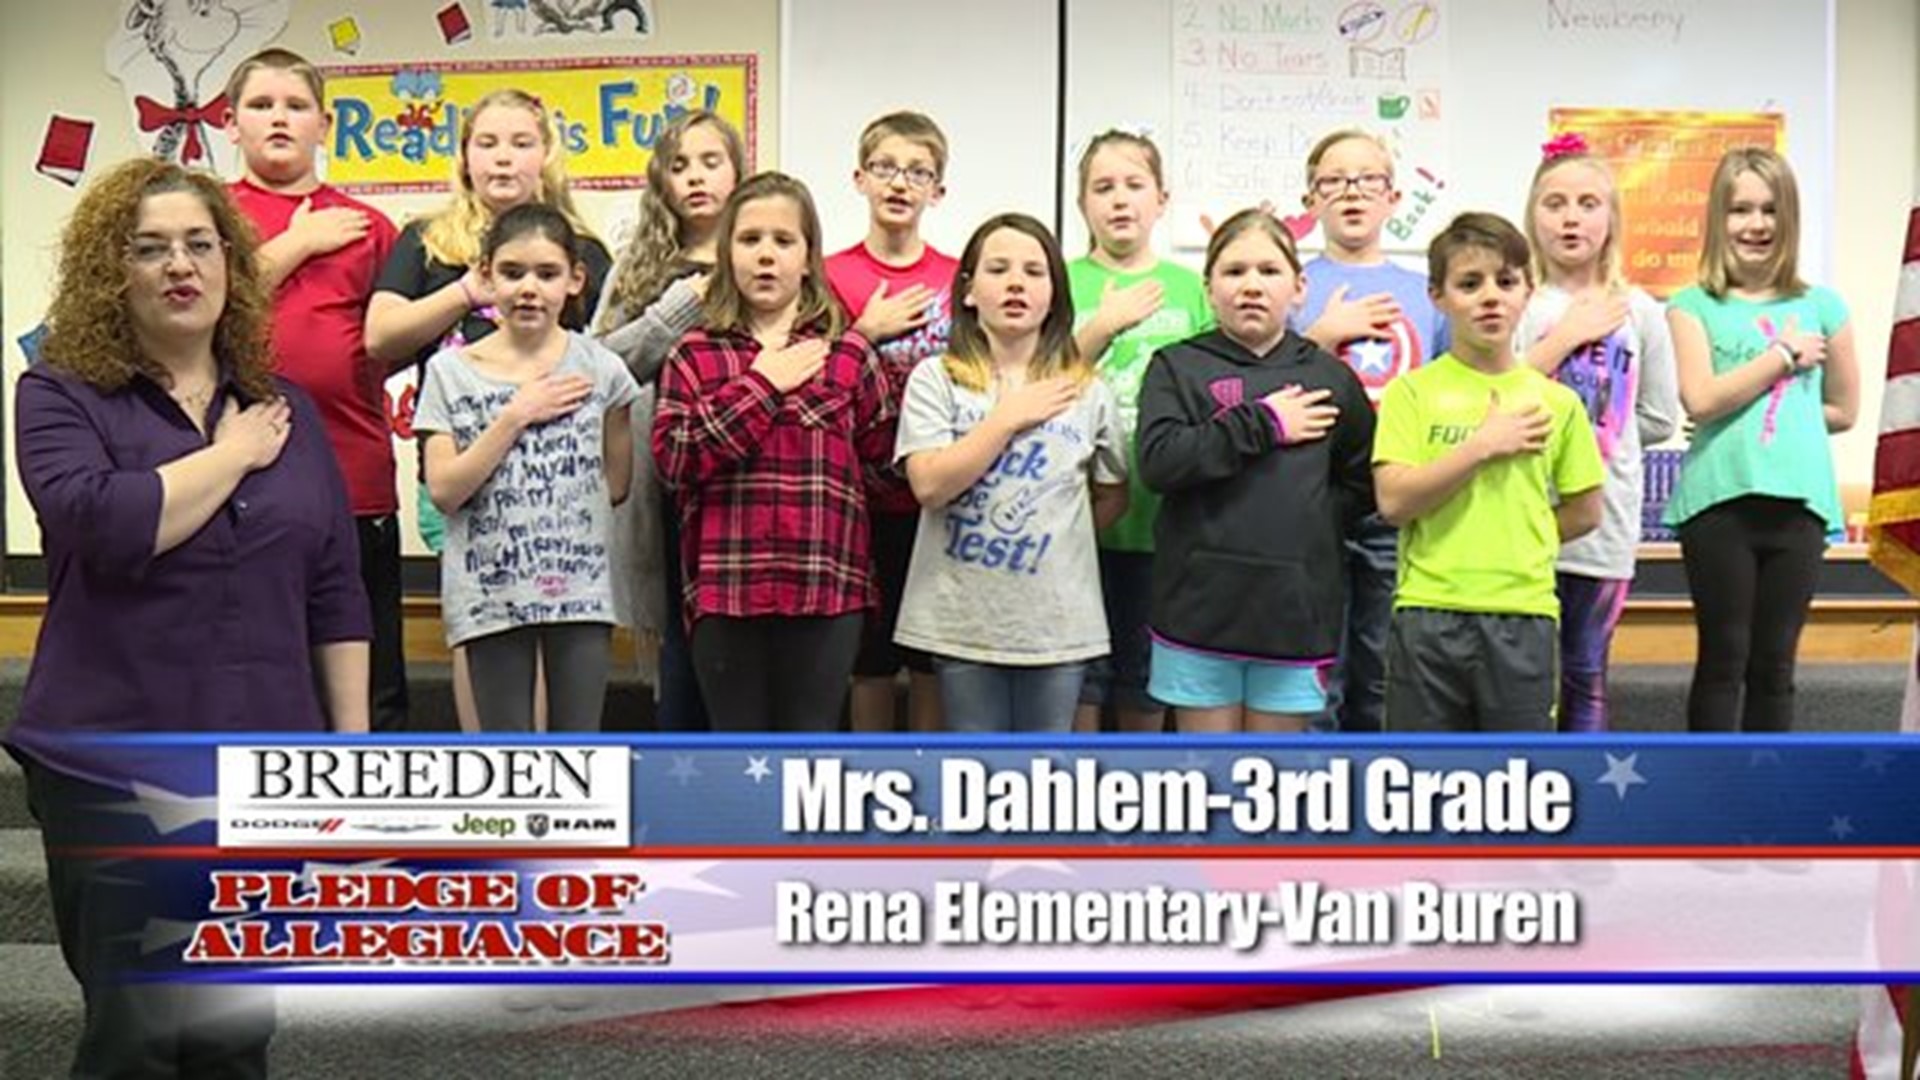 Rena Elementary - Van Buren, Mrs. Dahlem - Third Grade